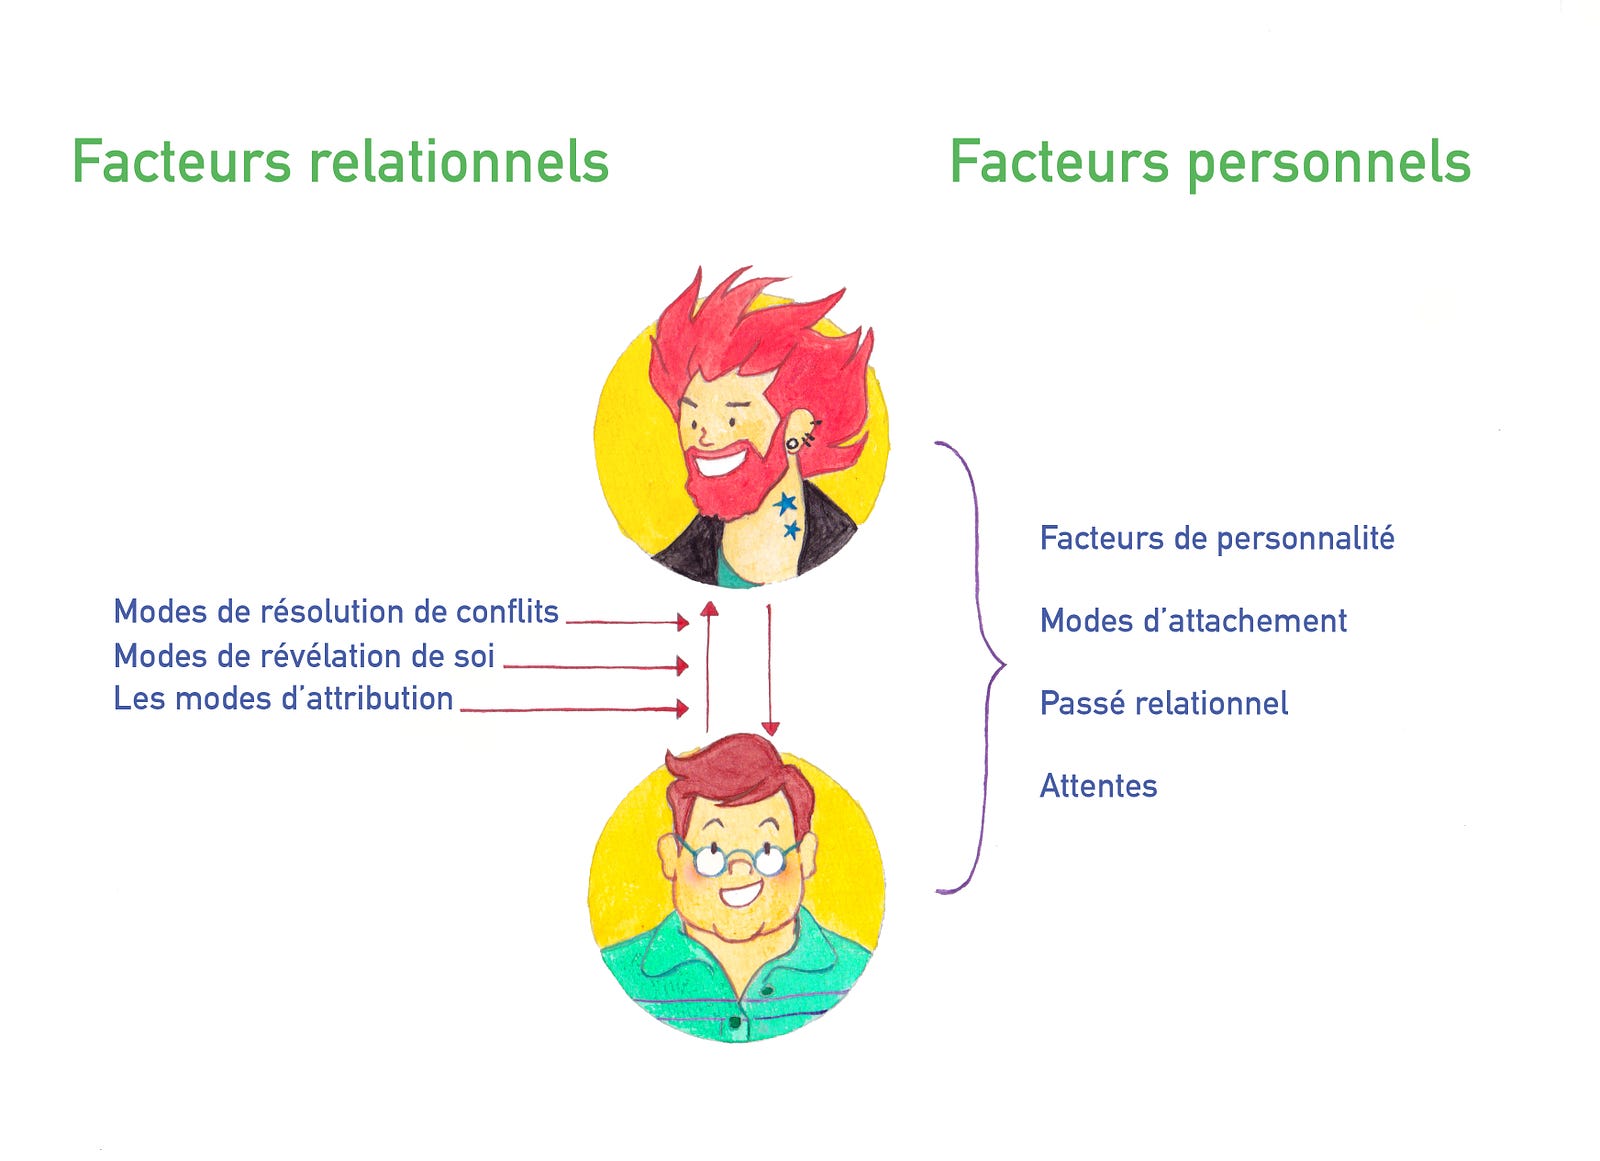 numérique : image présentant les facteurs relationnels et personnels d'un échange 